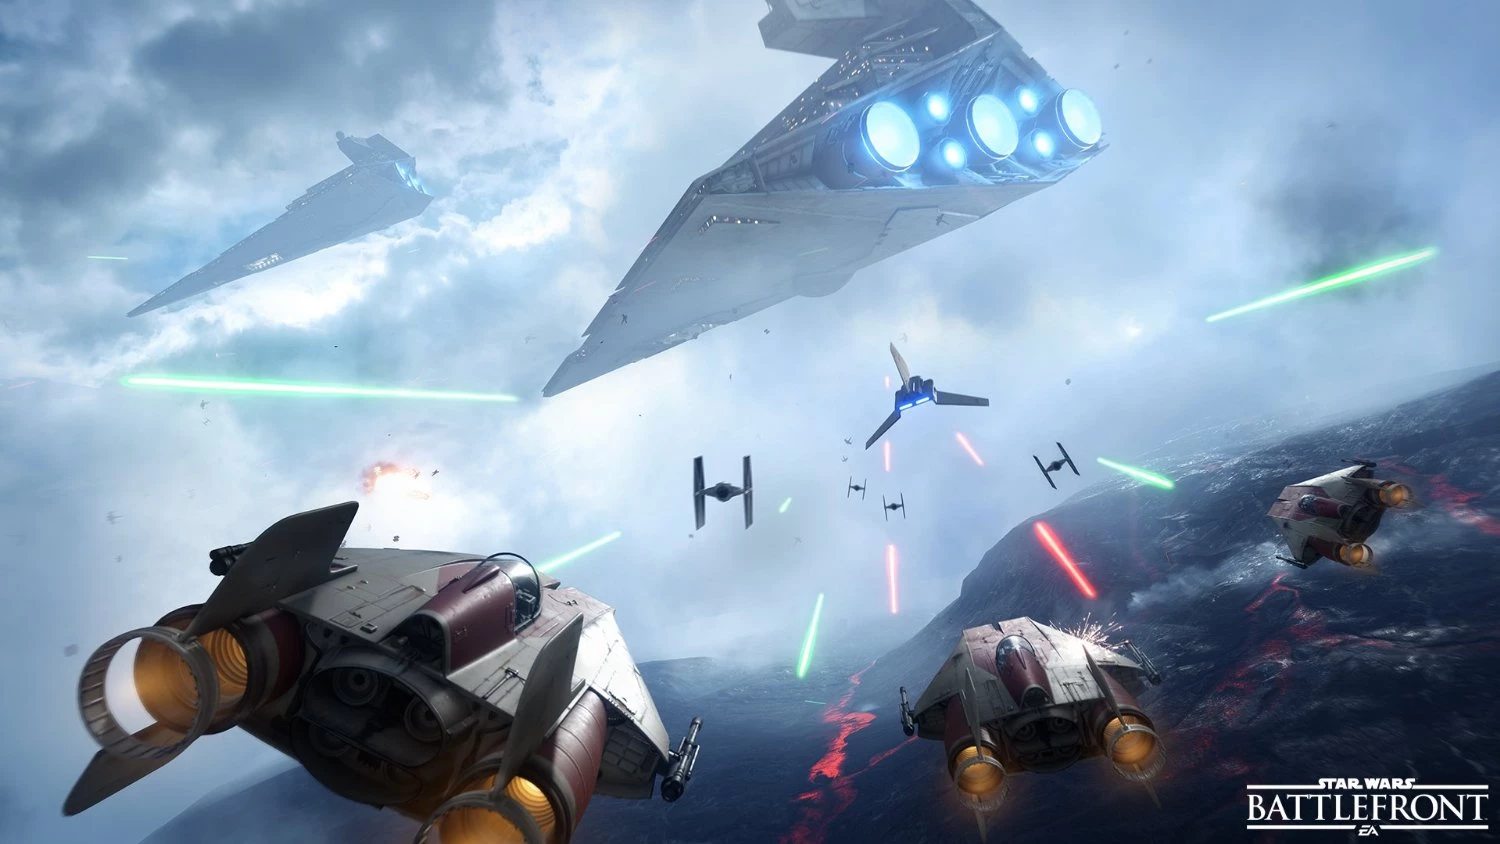 Star Wars Battlefront (digitaal) voor de PC Gaming kopen op nedgame.nl